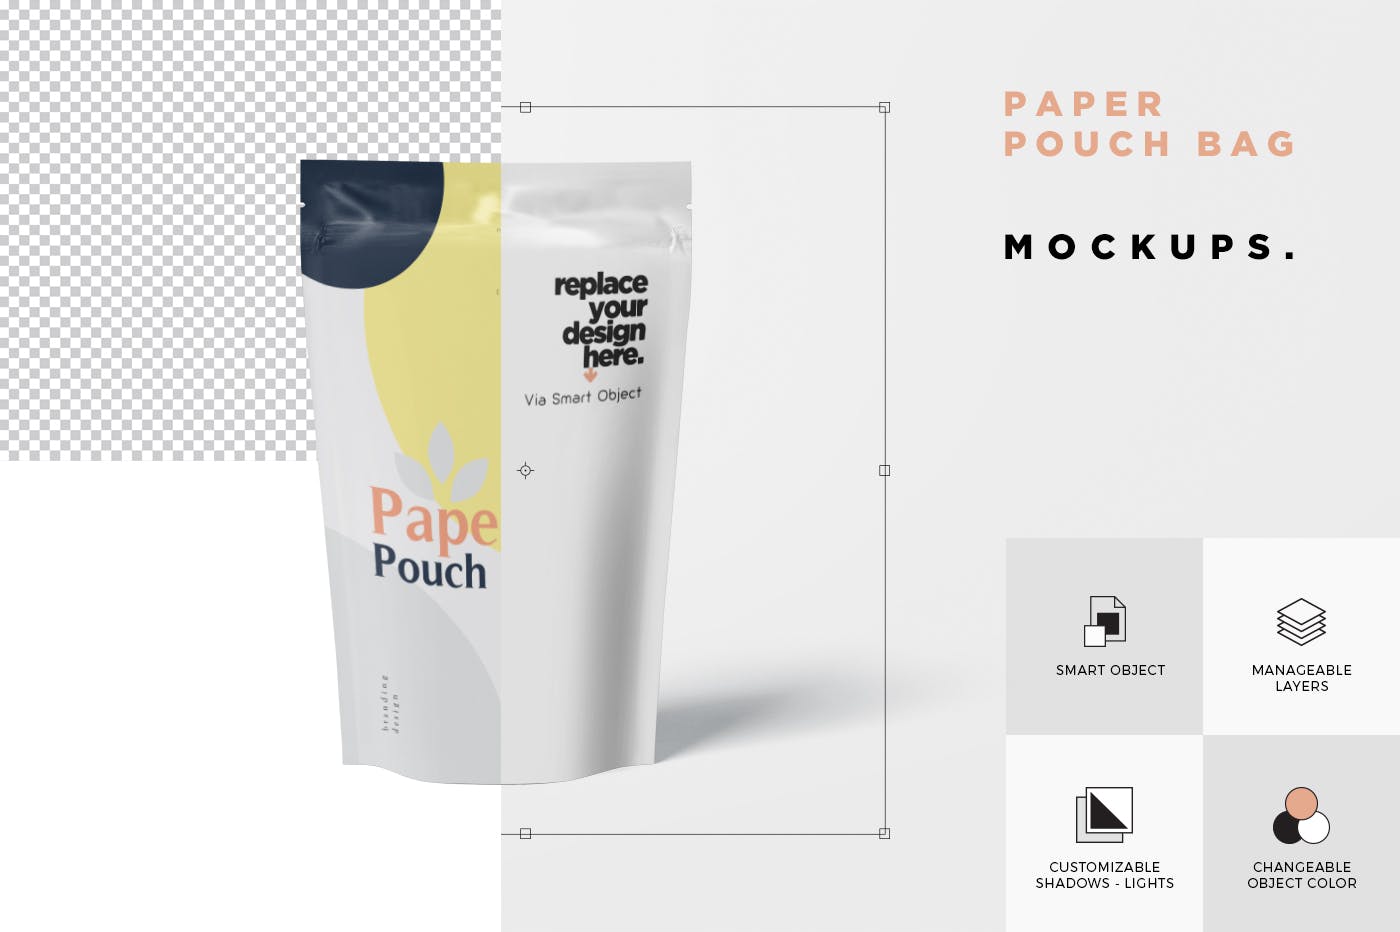 食品自封袋包装设计效果图样机 Paper Pouch Bag